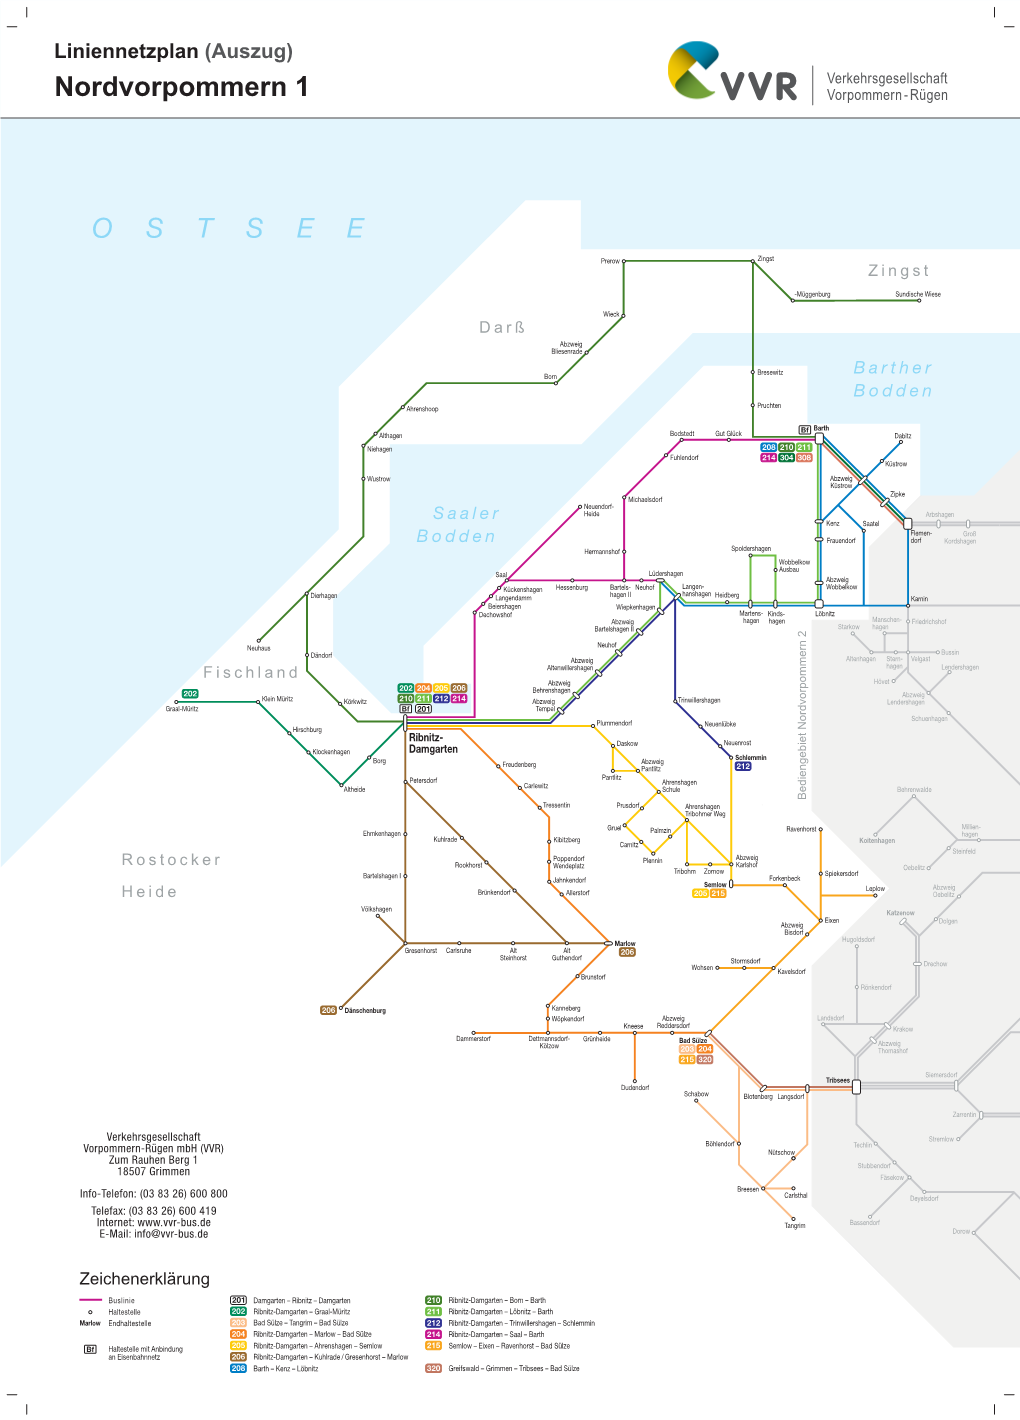 Liniennetzplan (Auszug) Nordvorpommern 1